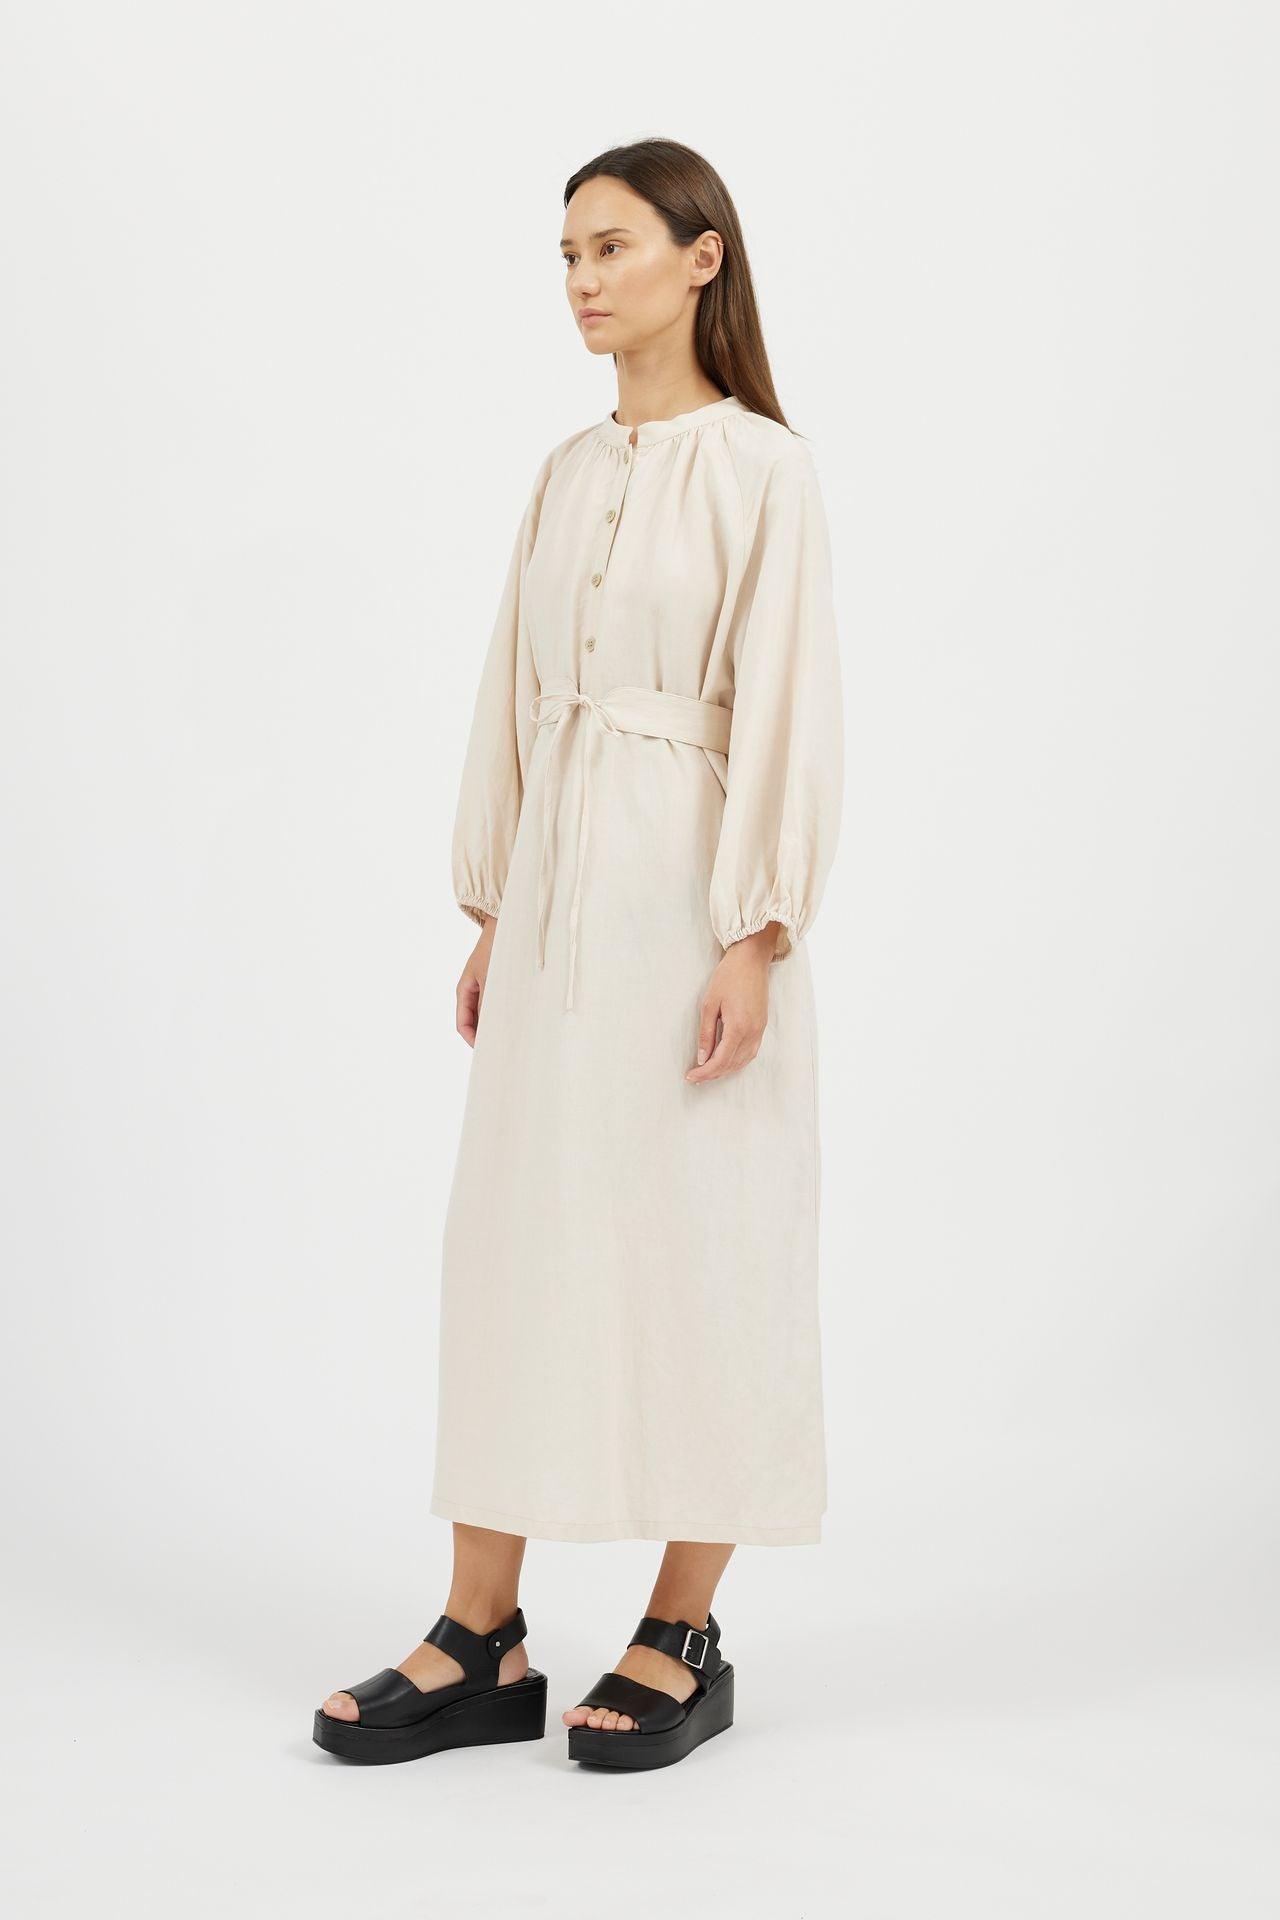 Women's Puff Sleeve Linen Long Dress - NOT LABELED